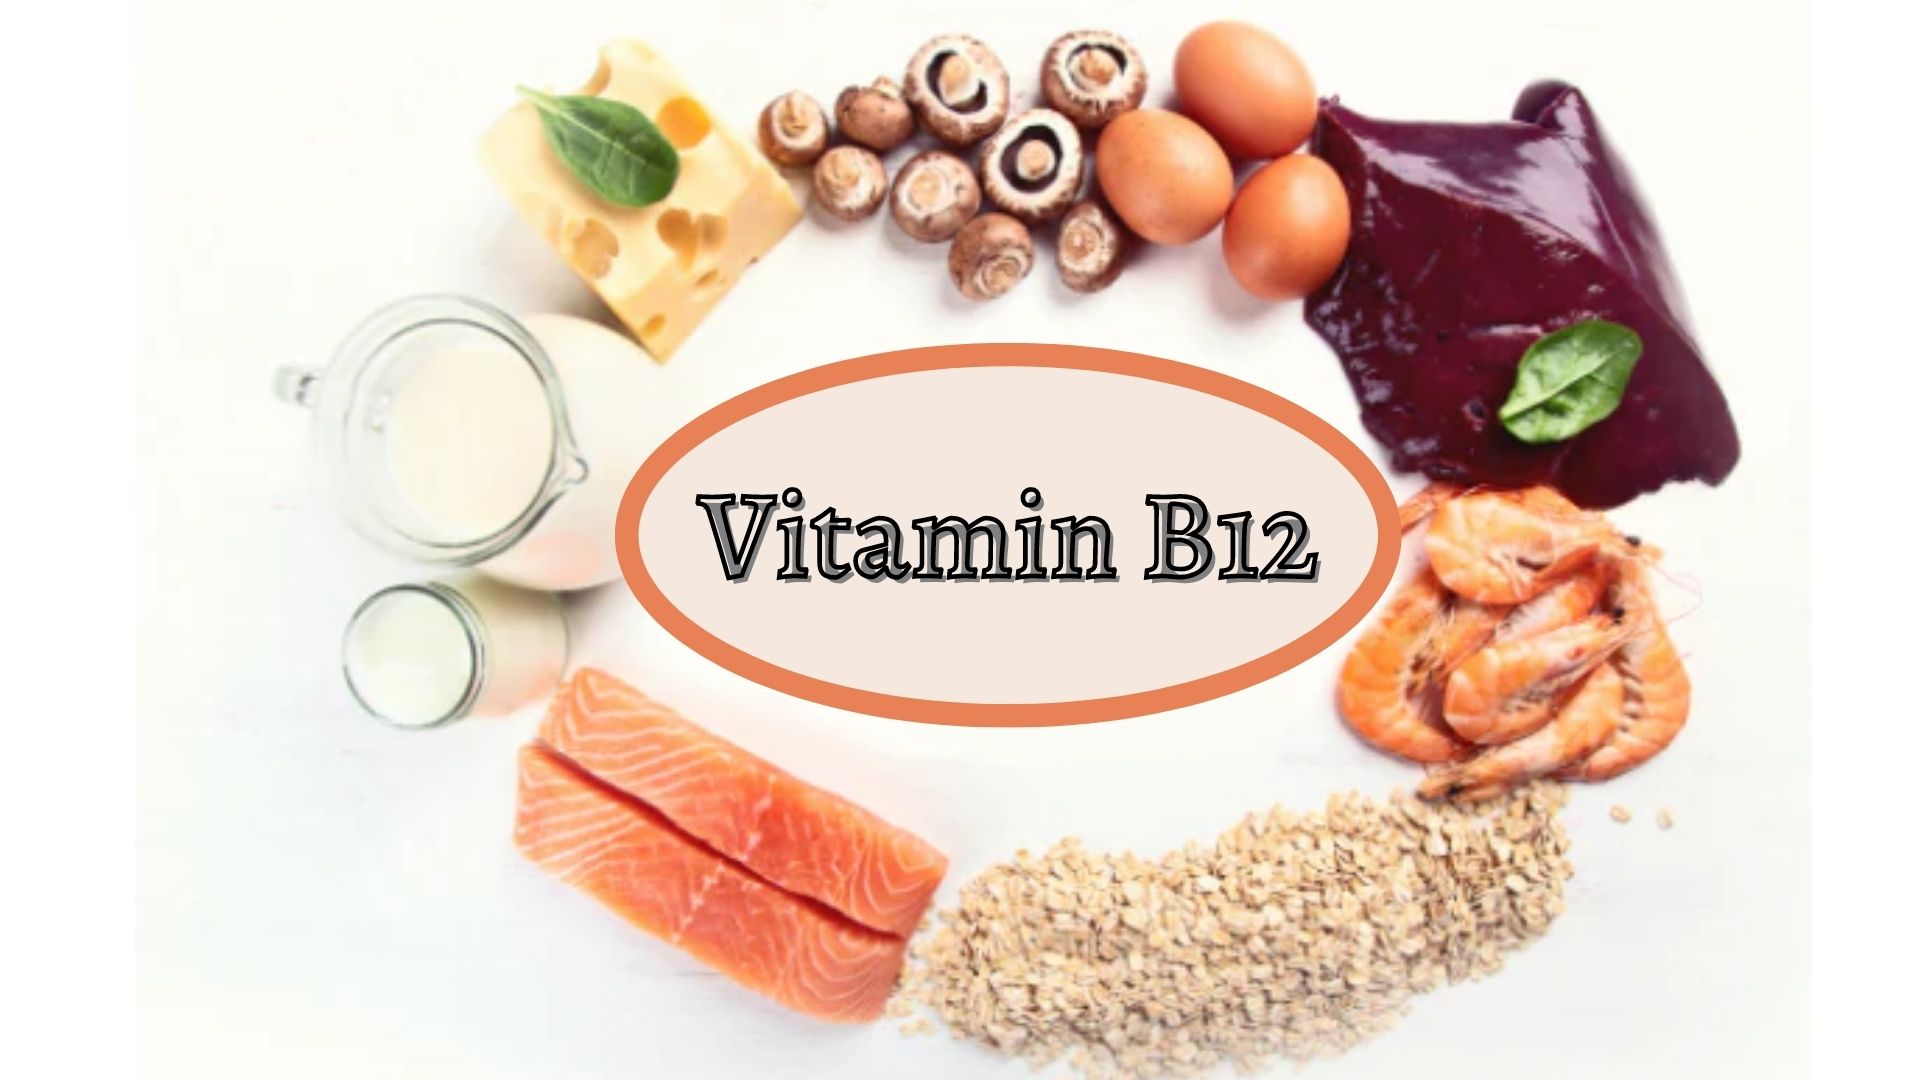 Thiếu vitamin B12 gây bệnh gì? Những điều bạn nên biết - Ảnh 1.